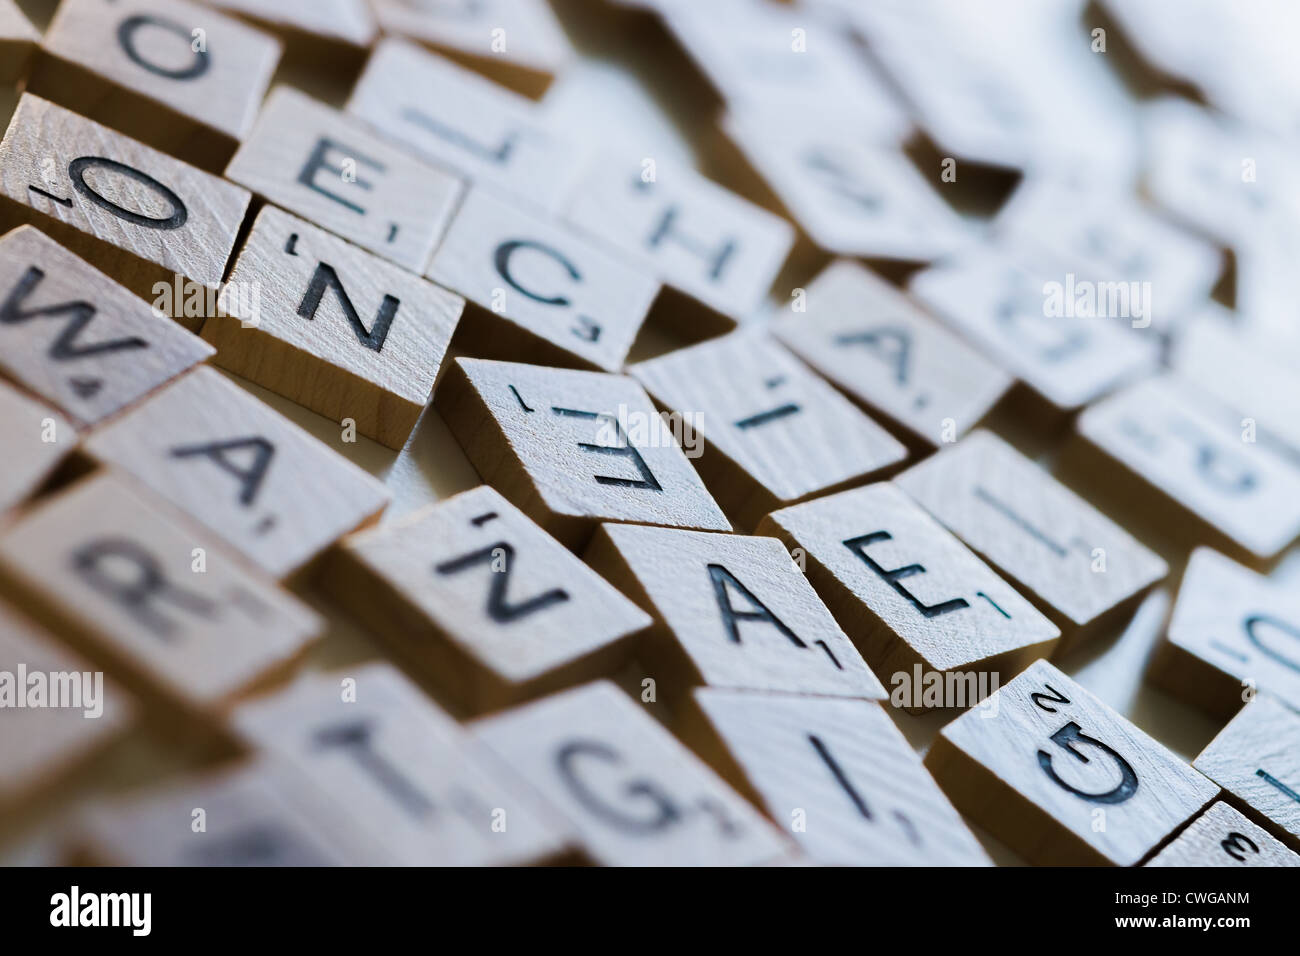 gemischte Scrabble-Buchstaben Stockfoto